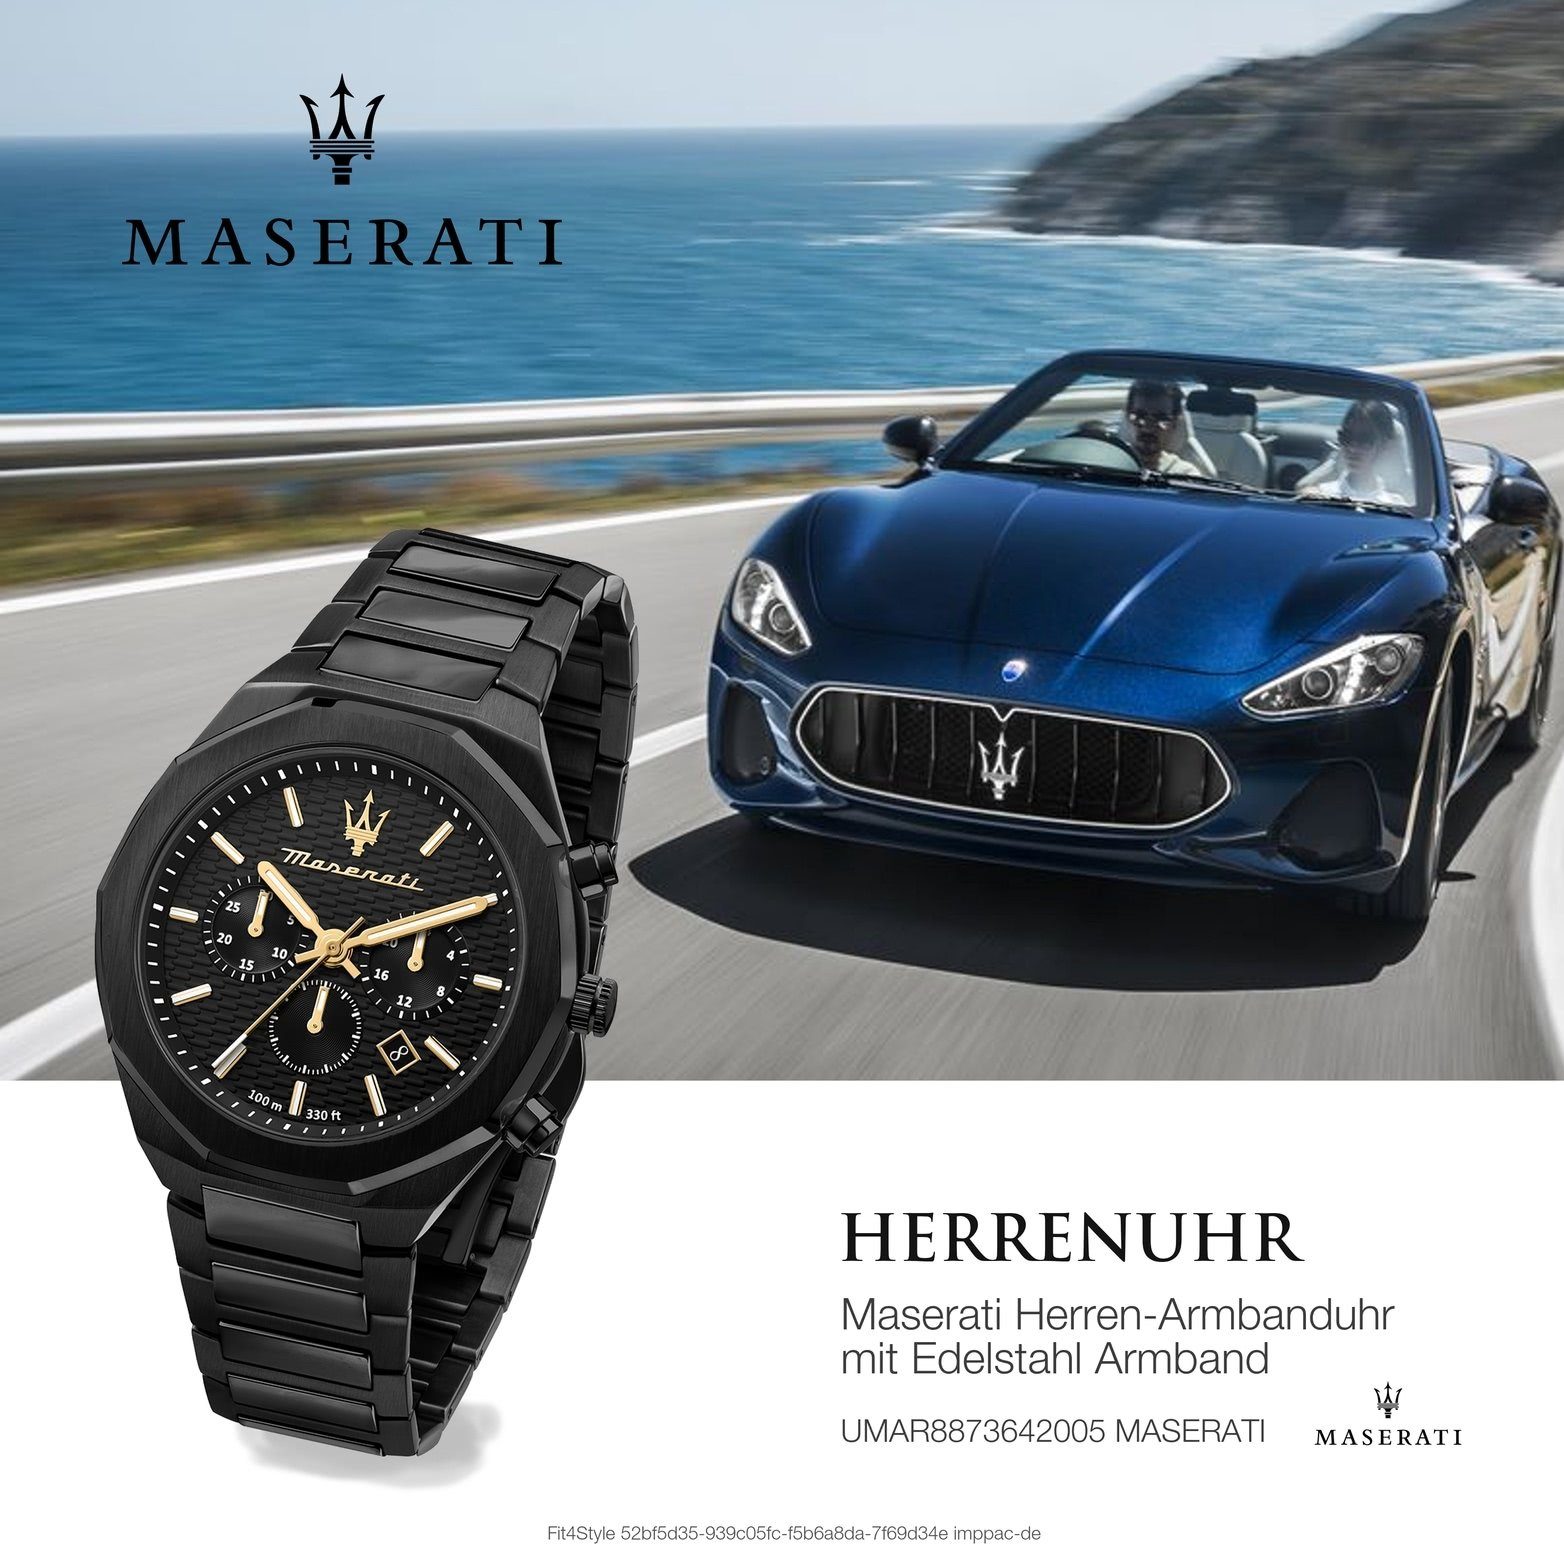 Edelstahlarmband, rundes (ca. MASERATI groß schwarz Maserati Armband-Uhr, 45mm) Gehäuse, Chronograph Herrenuhr Edelstahl